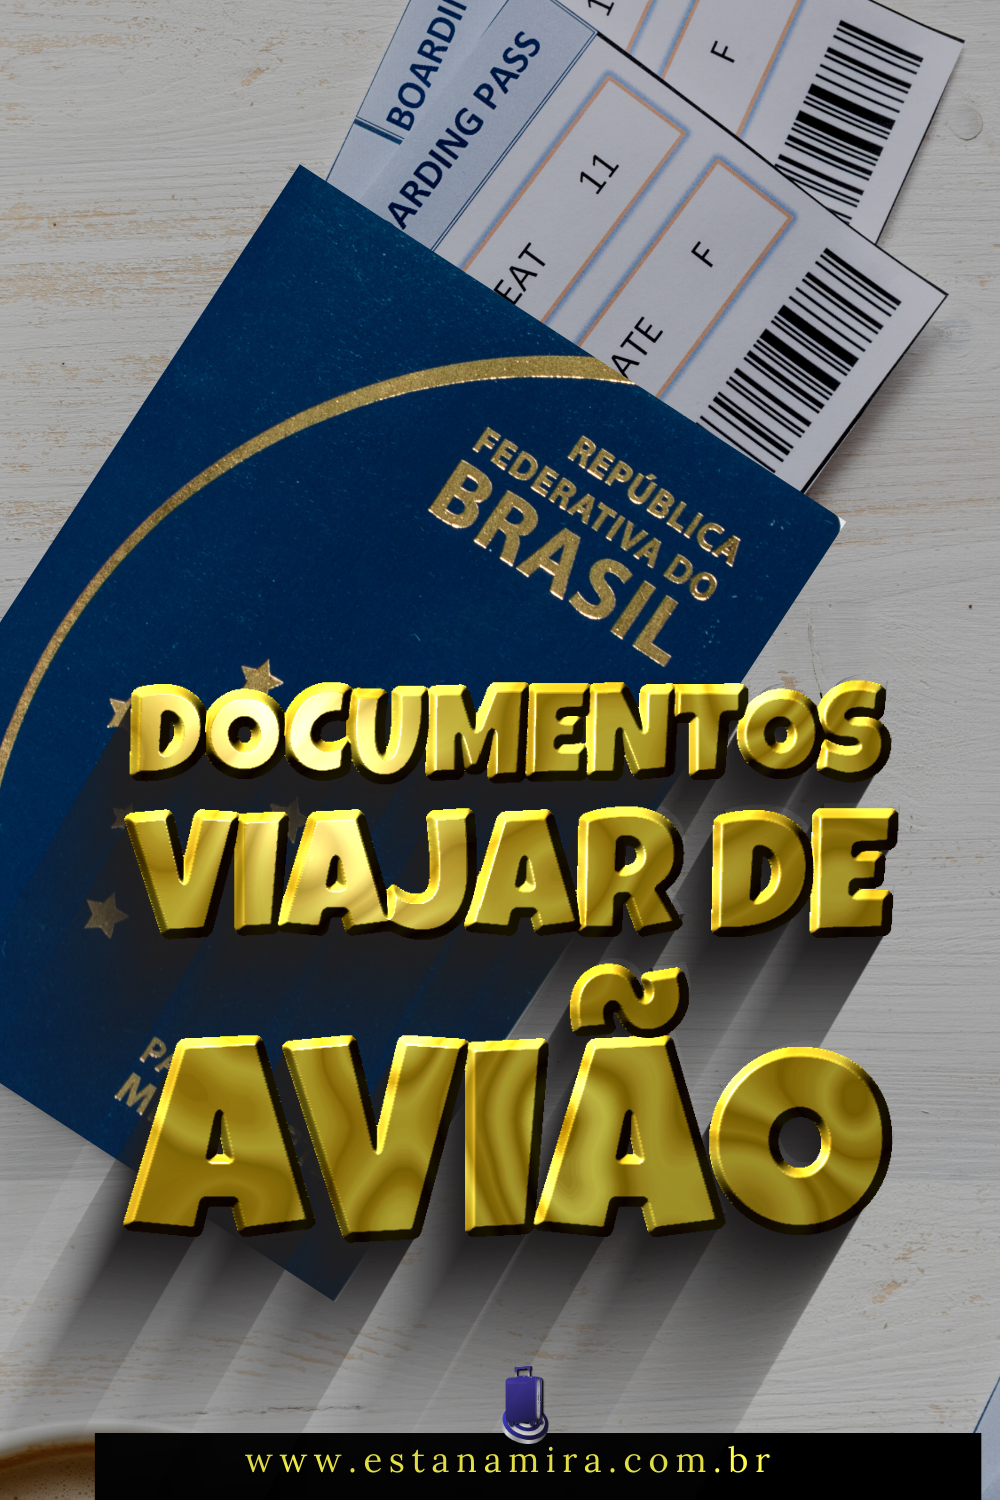 Documentos para viajar de avião em viagens nacionais e internacionais